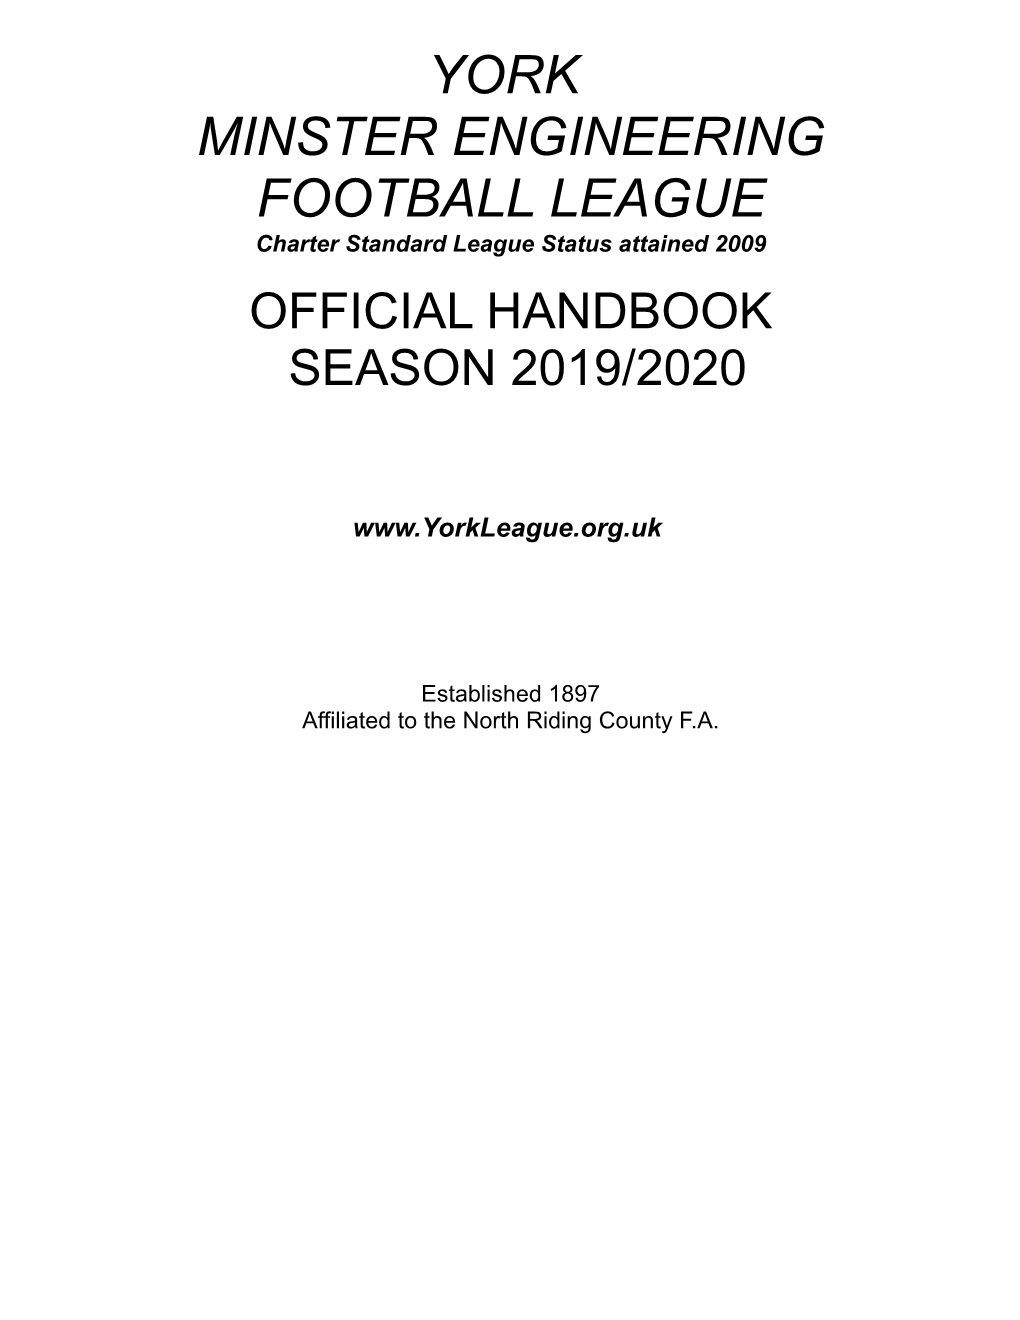 YORK MINSTER ENGINEERING FOOTBALL LEAGUE Charter Standard League Status Attained 2009 OFFICIAL HANDBOOK SEASON 2019/2020